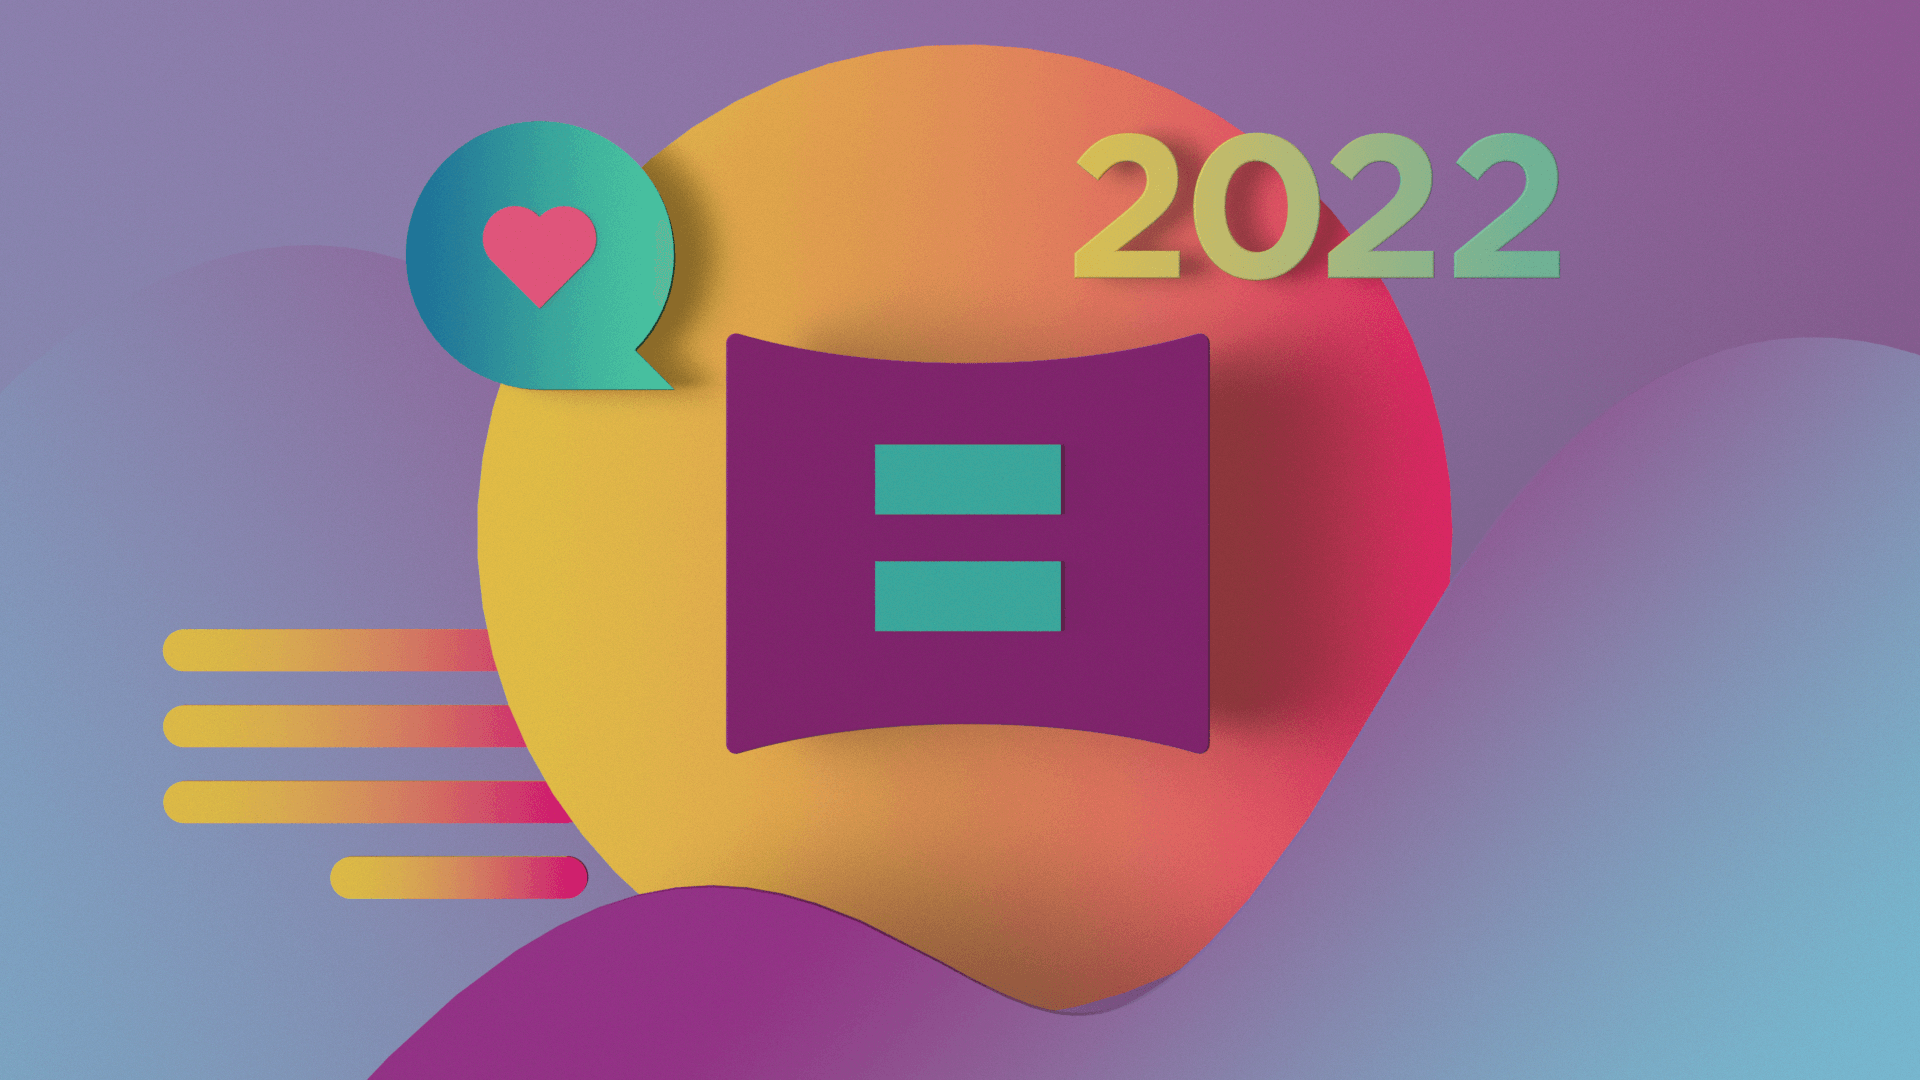 Equality 2022